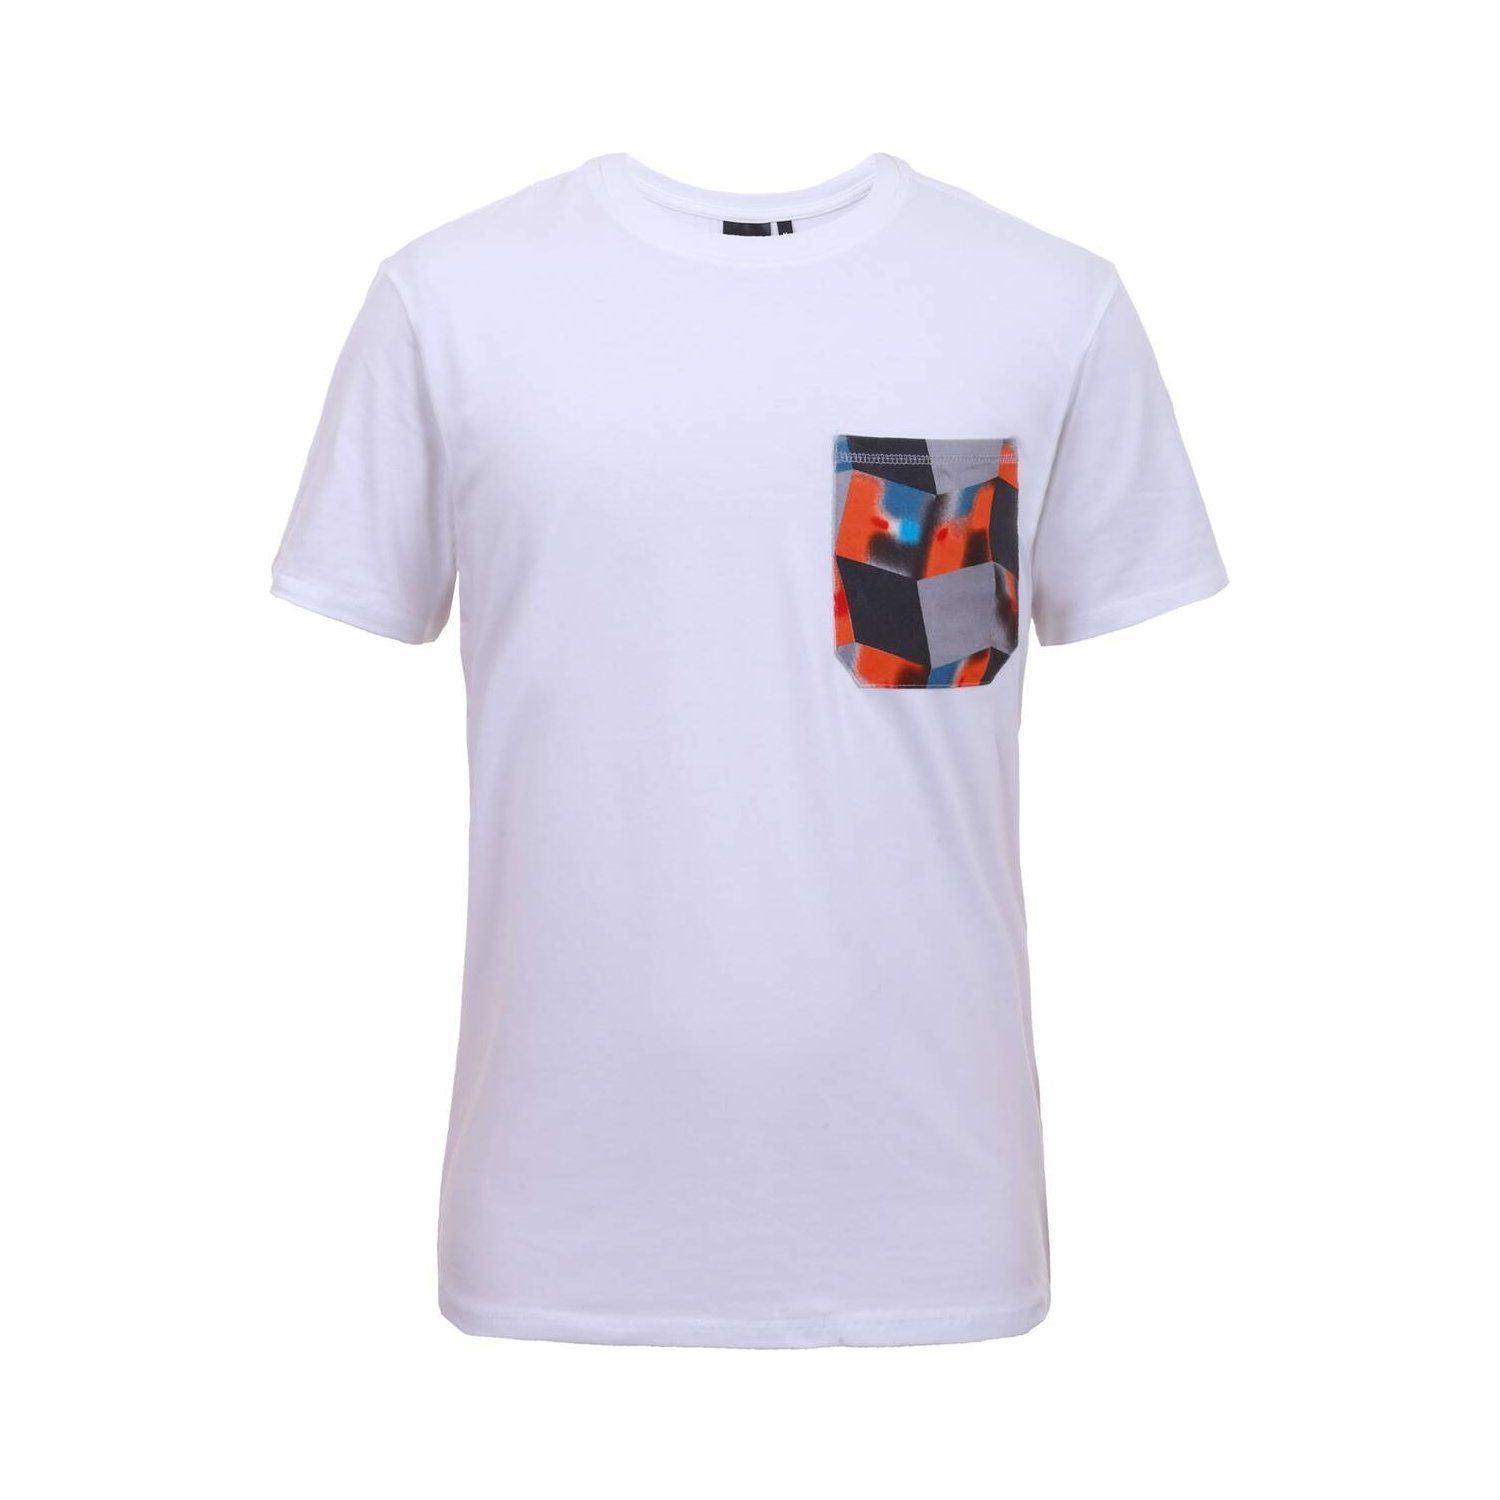 WEISS Icepeak - S Herren 980 T-Shirt / T-Shirt